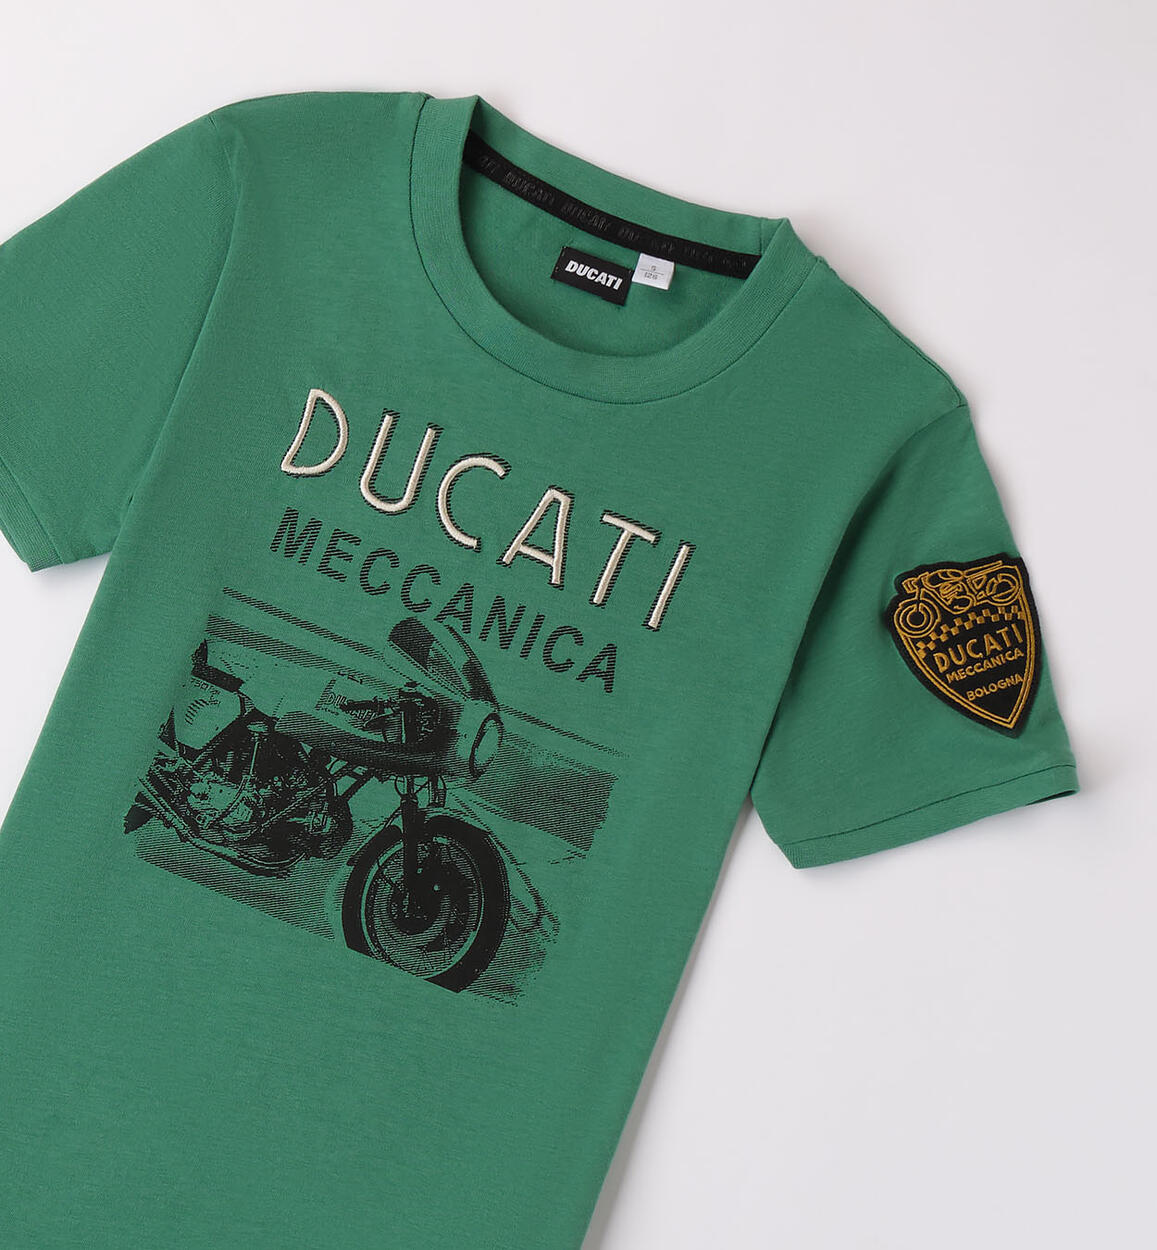 T-shirt Ducati con patch Ducati  per ragazzo da 8 a 16 anni Ducati G8630 5047